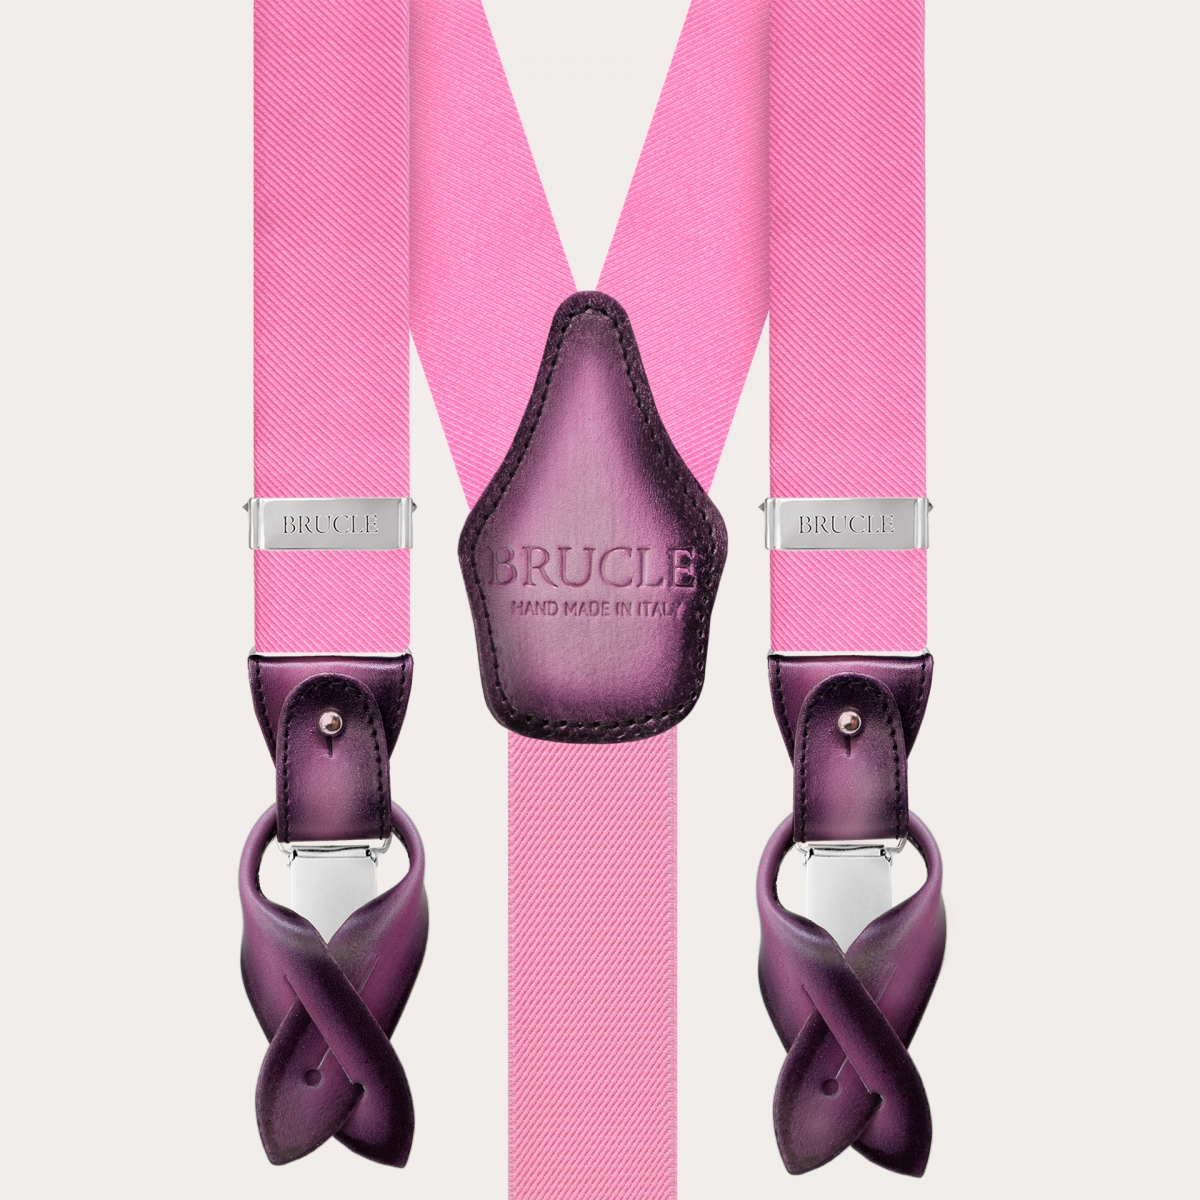 Conjunto coordinado de corbata y tirantes en seda rosa